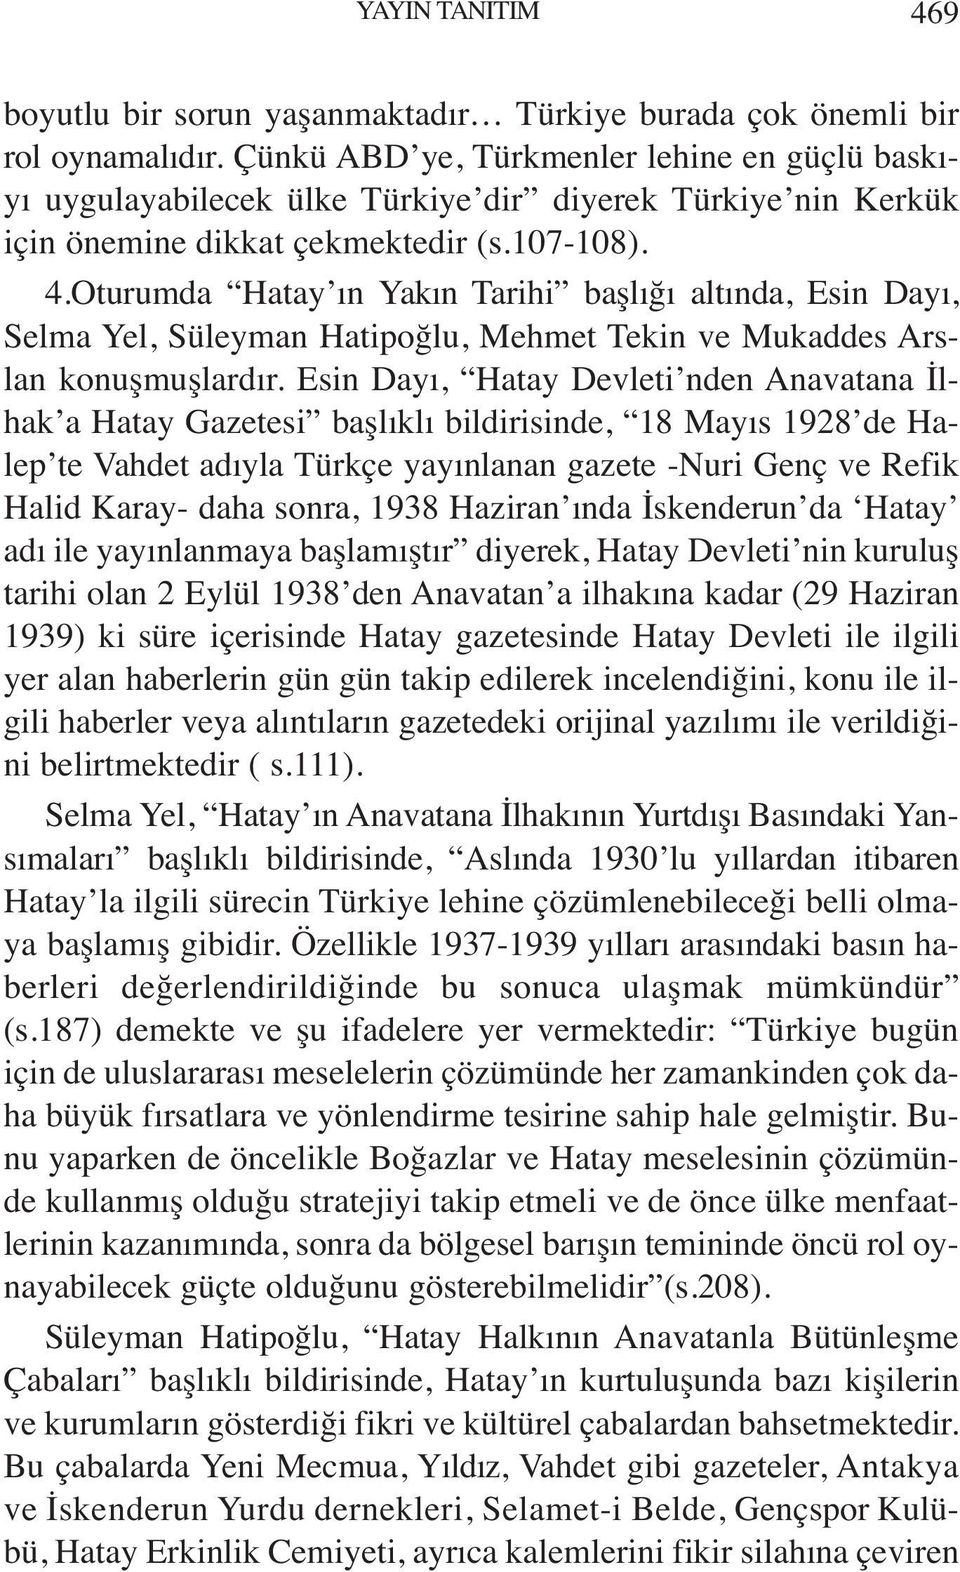 Oturumda Hatay ın Yakın Tarihi başlığı altında, Esin Dayı, Selma Yel, Süleyman Hatipoğlu, Mehmet Tekin ve Mukaddes Arslan konuşmuşlardır.